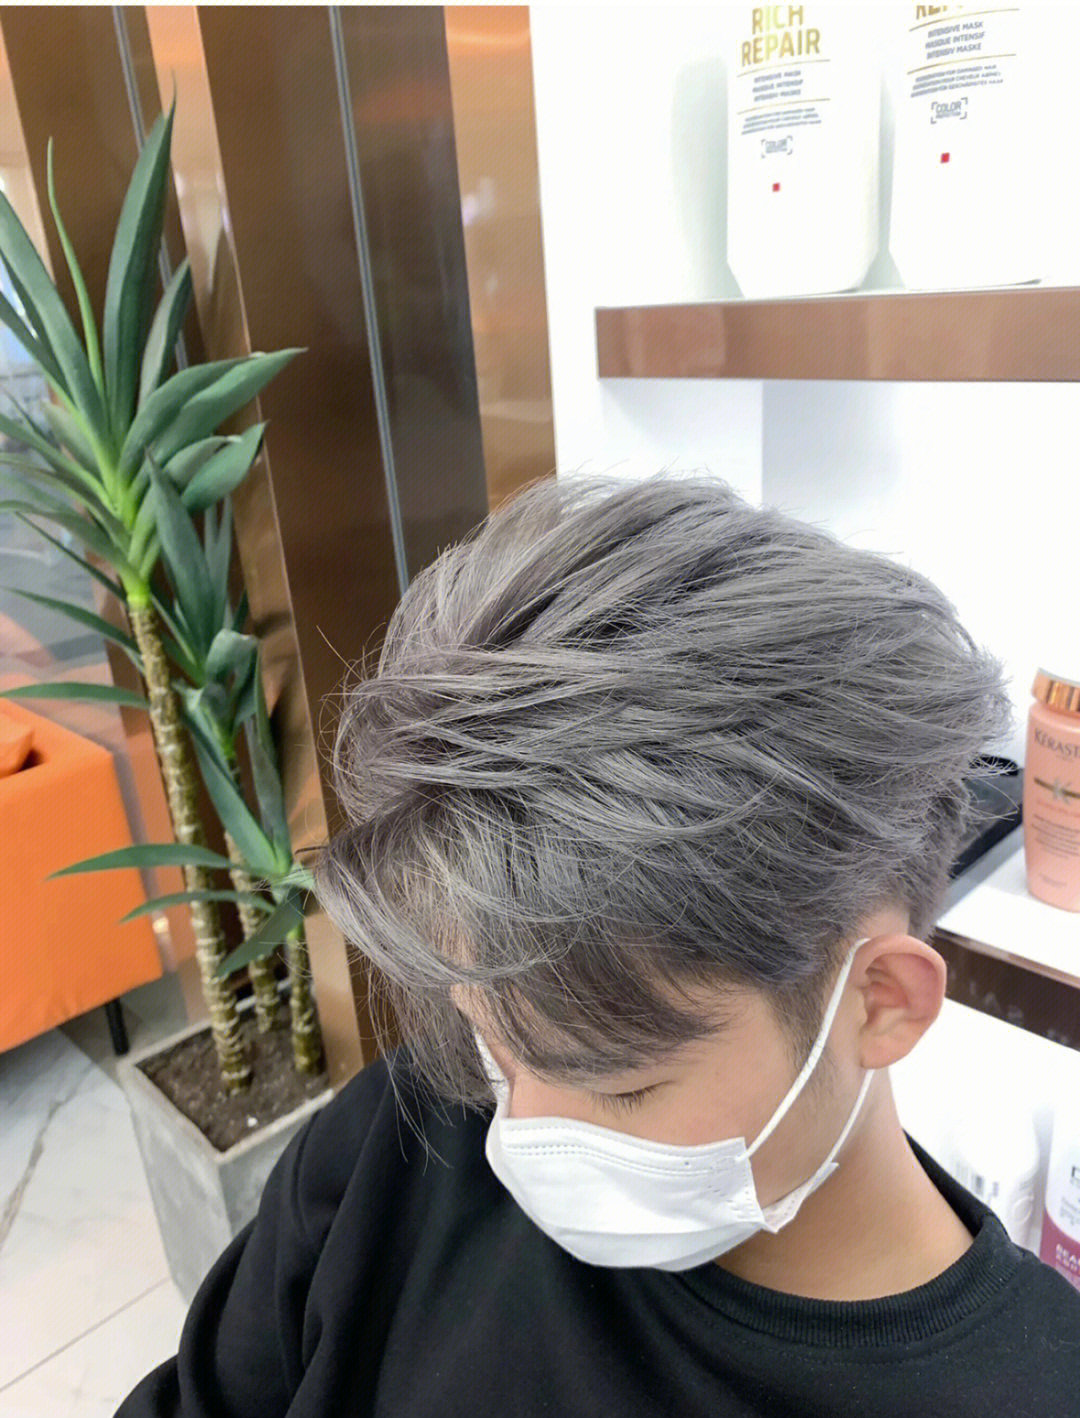 火山灰色头发是什么颜色:火山灰发色,是以奶茶色为主,加入了灰色,属于